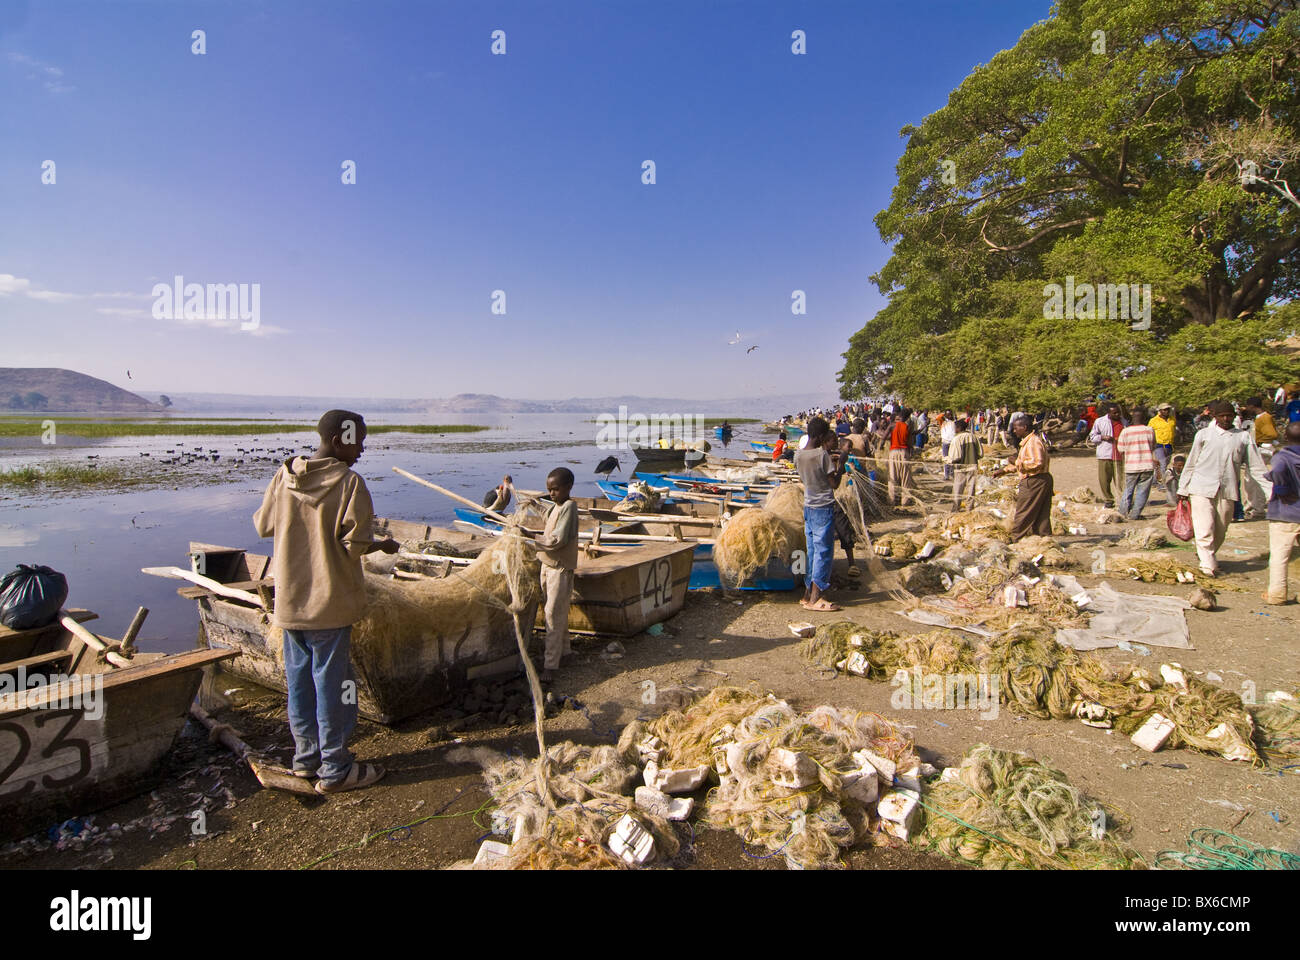 Les pêcheurs au lac Awassa, Rift Valley, l'Éthiopie, l'Afrique Banque D'Images